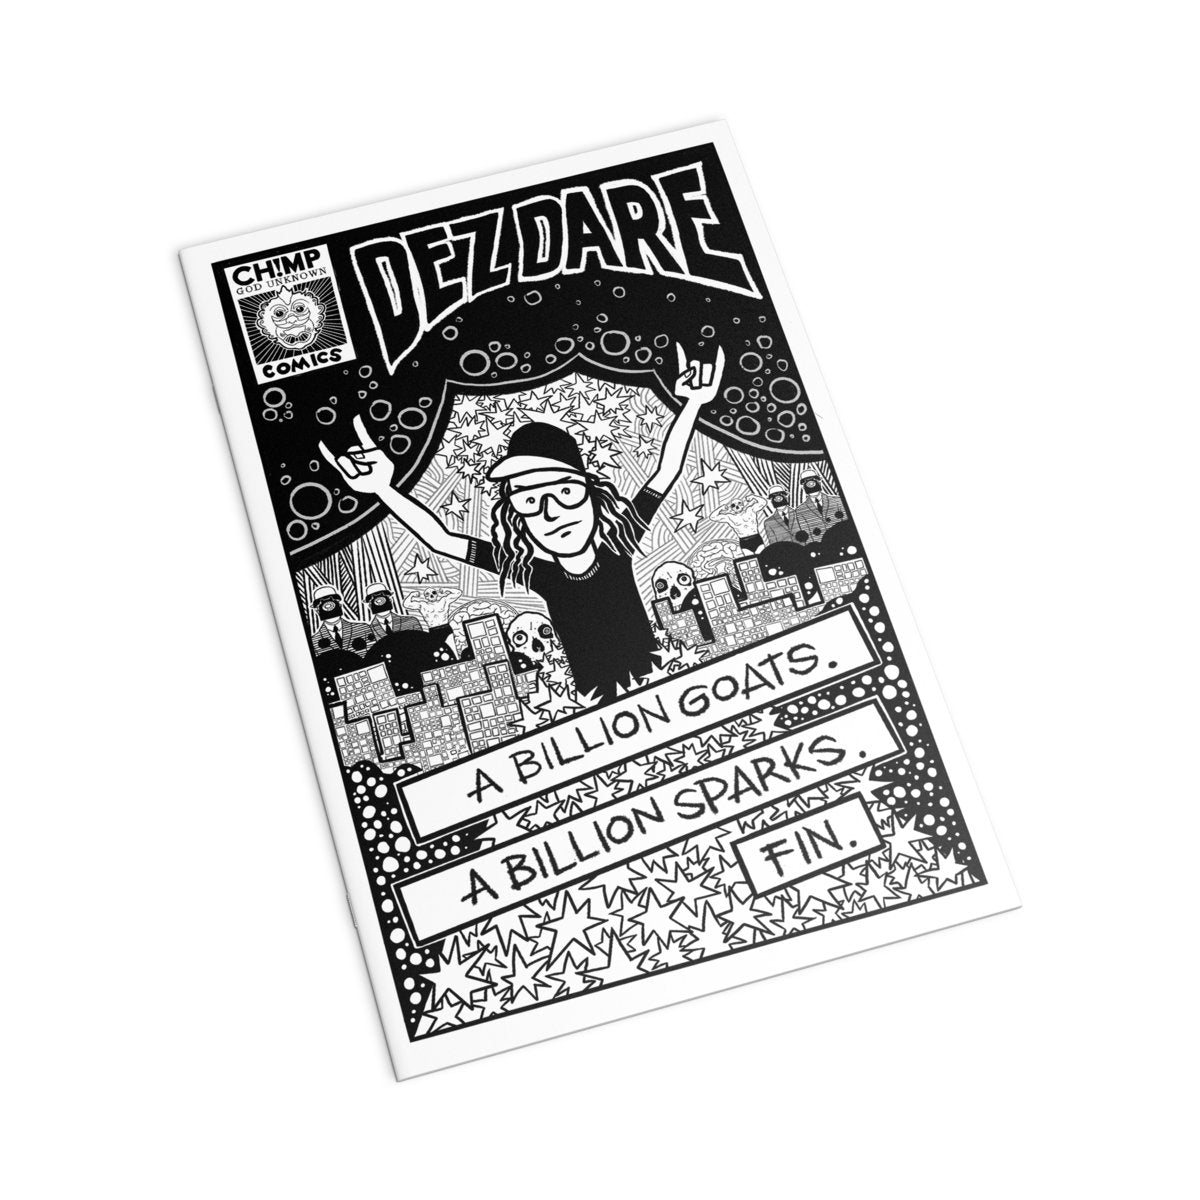 Dez Dare - A Billion Goats. A Billion Sparks. Fin. LP Aussie Psych Punk Legend + Comic